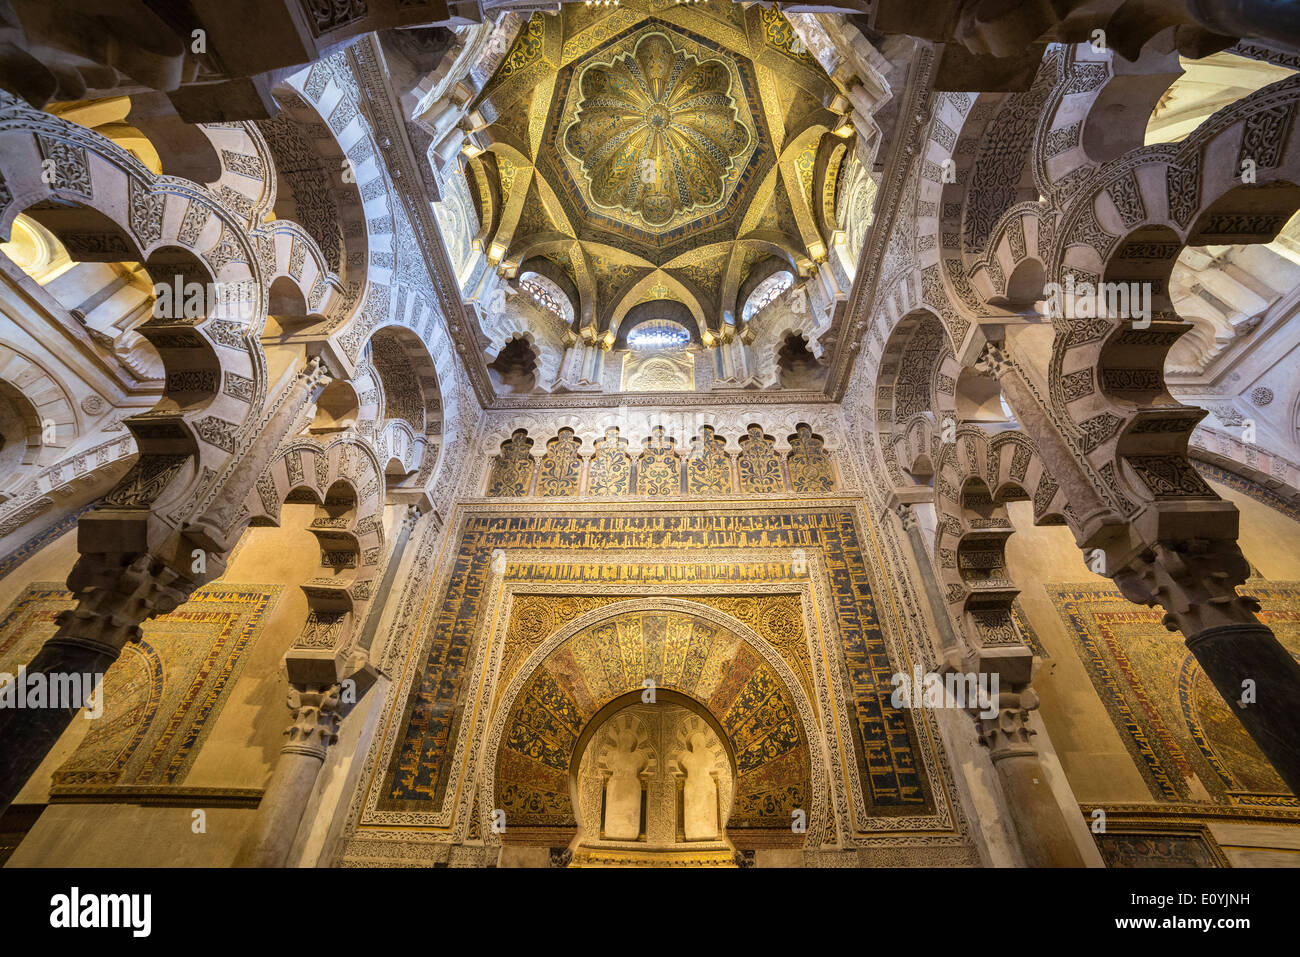 Le dôme au-dessus du mihrab avec ses stucs sculptés et décoration en mosaïque. Grande Mosquée, de la Mezquita, dans la région de Cordoba, Espagne Banque D'Images